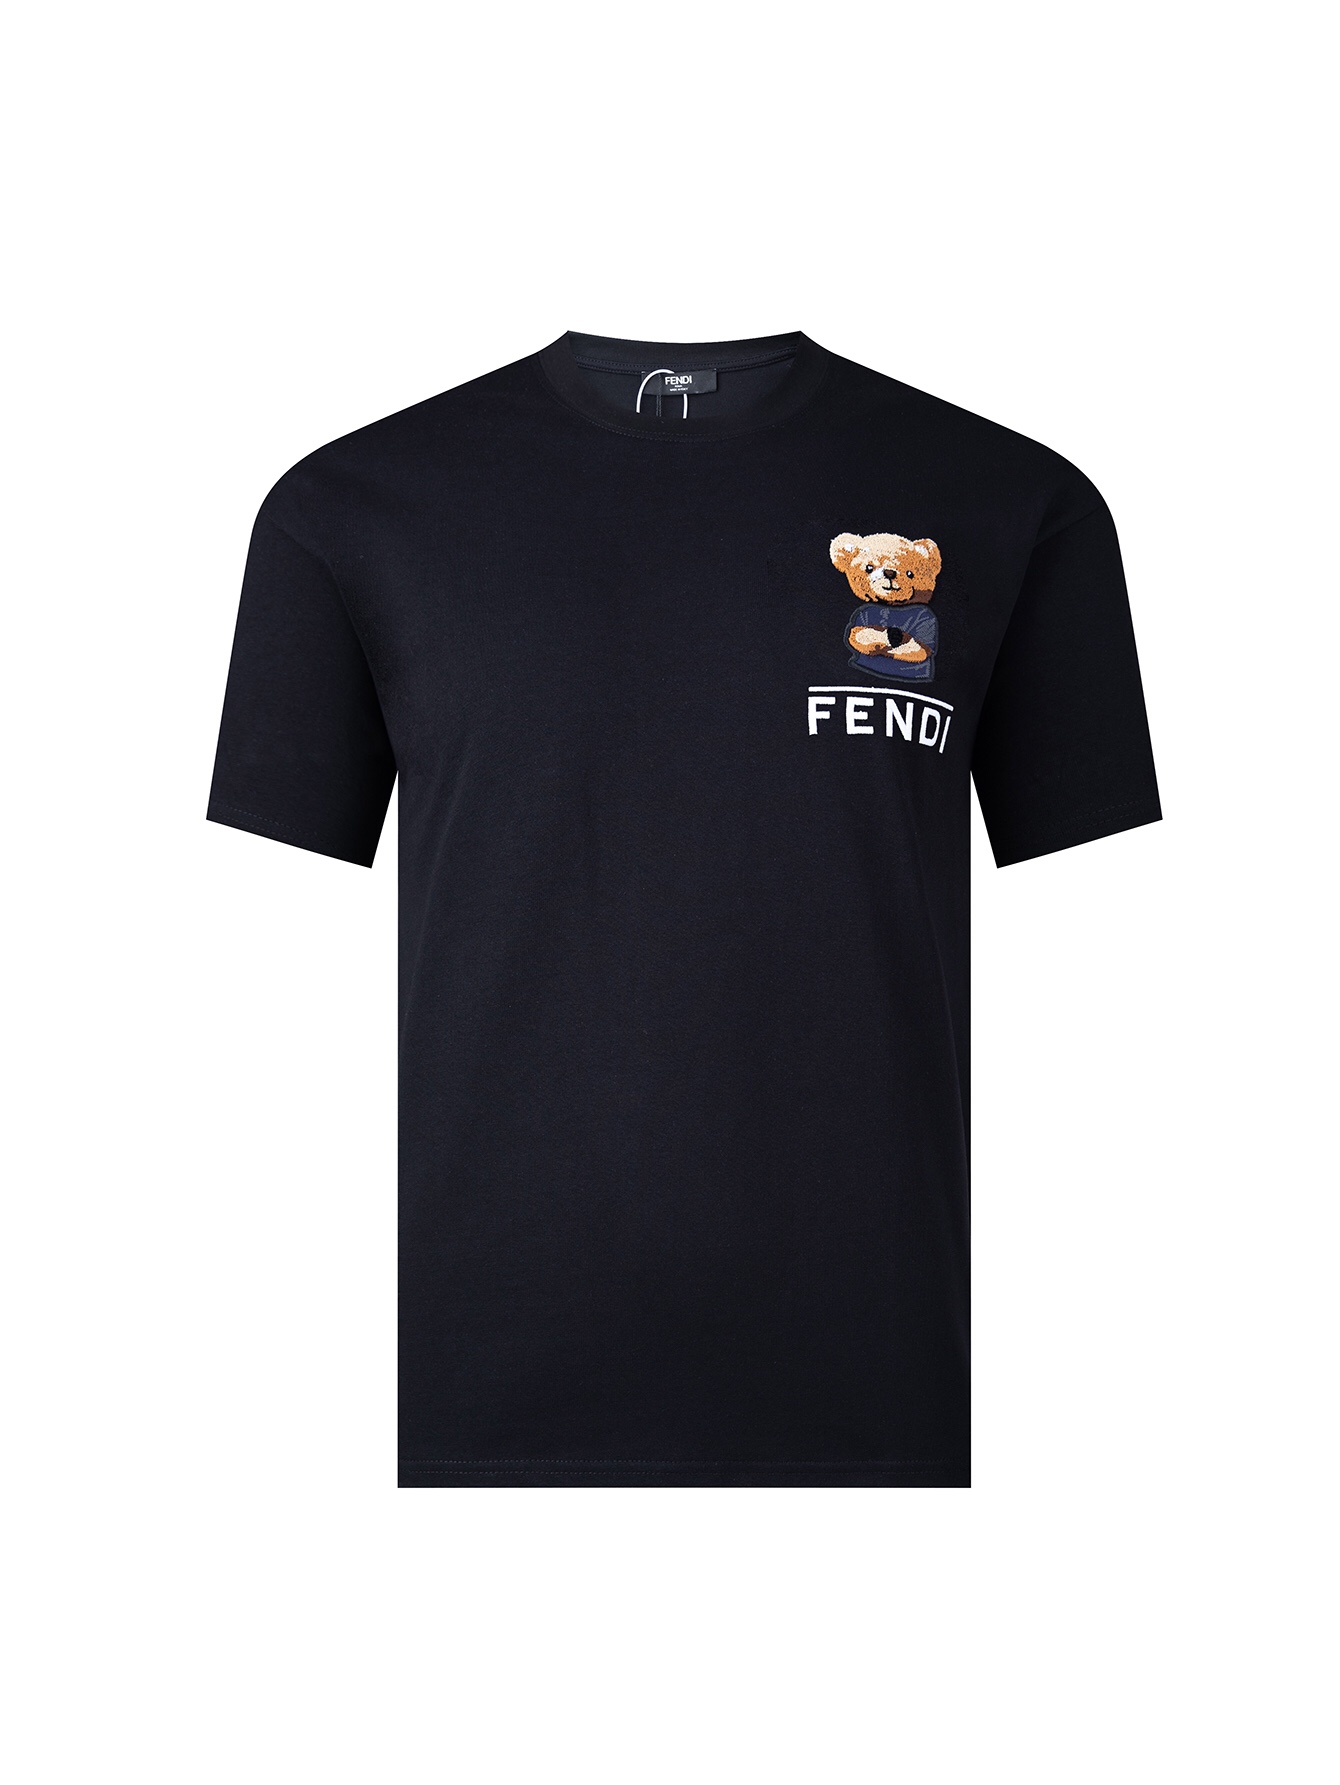 Fendi Clothing T-Shirt Black White Embroidery Unisex Short Sleeve